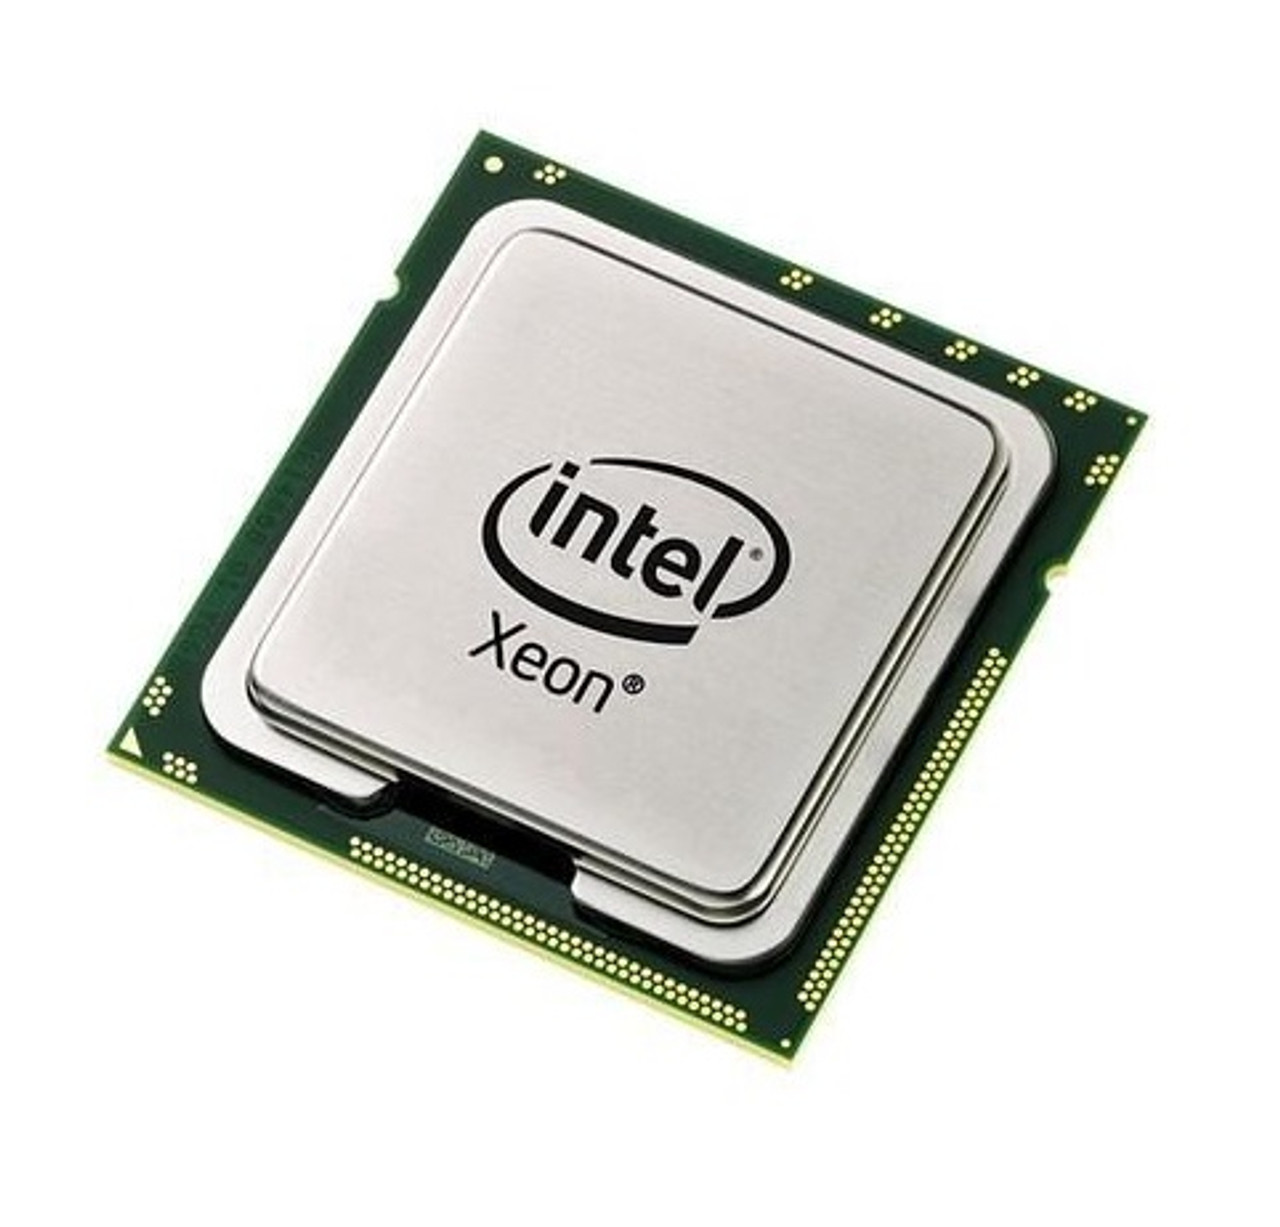 A01X0209 - Cisco 1.87GHz 4.80GT/s QPI 18MB L3 Cache Intel Xeon E7520 Quad Core Processor